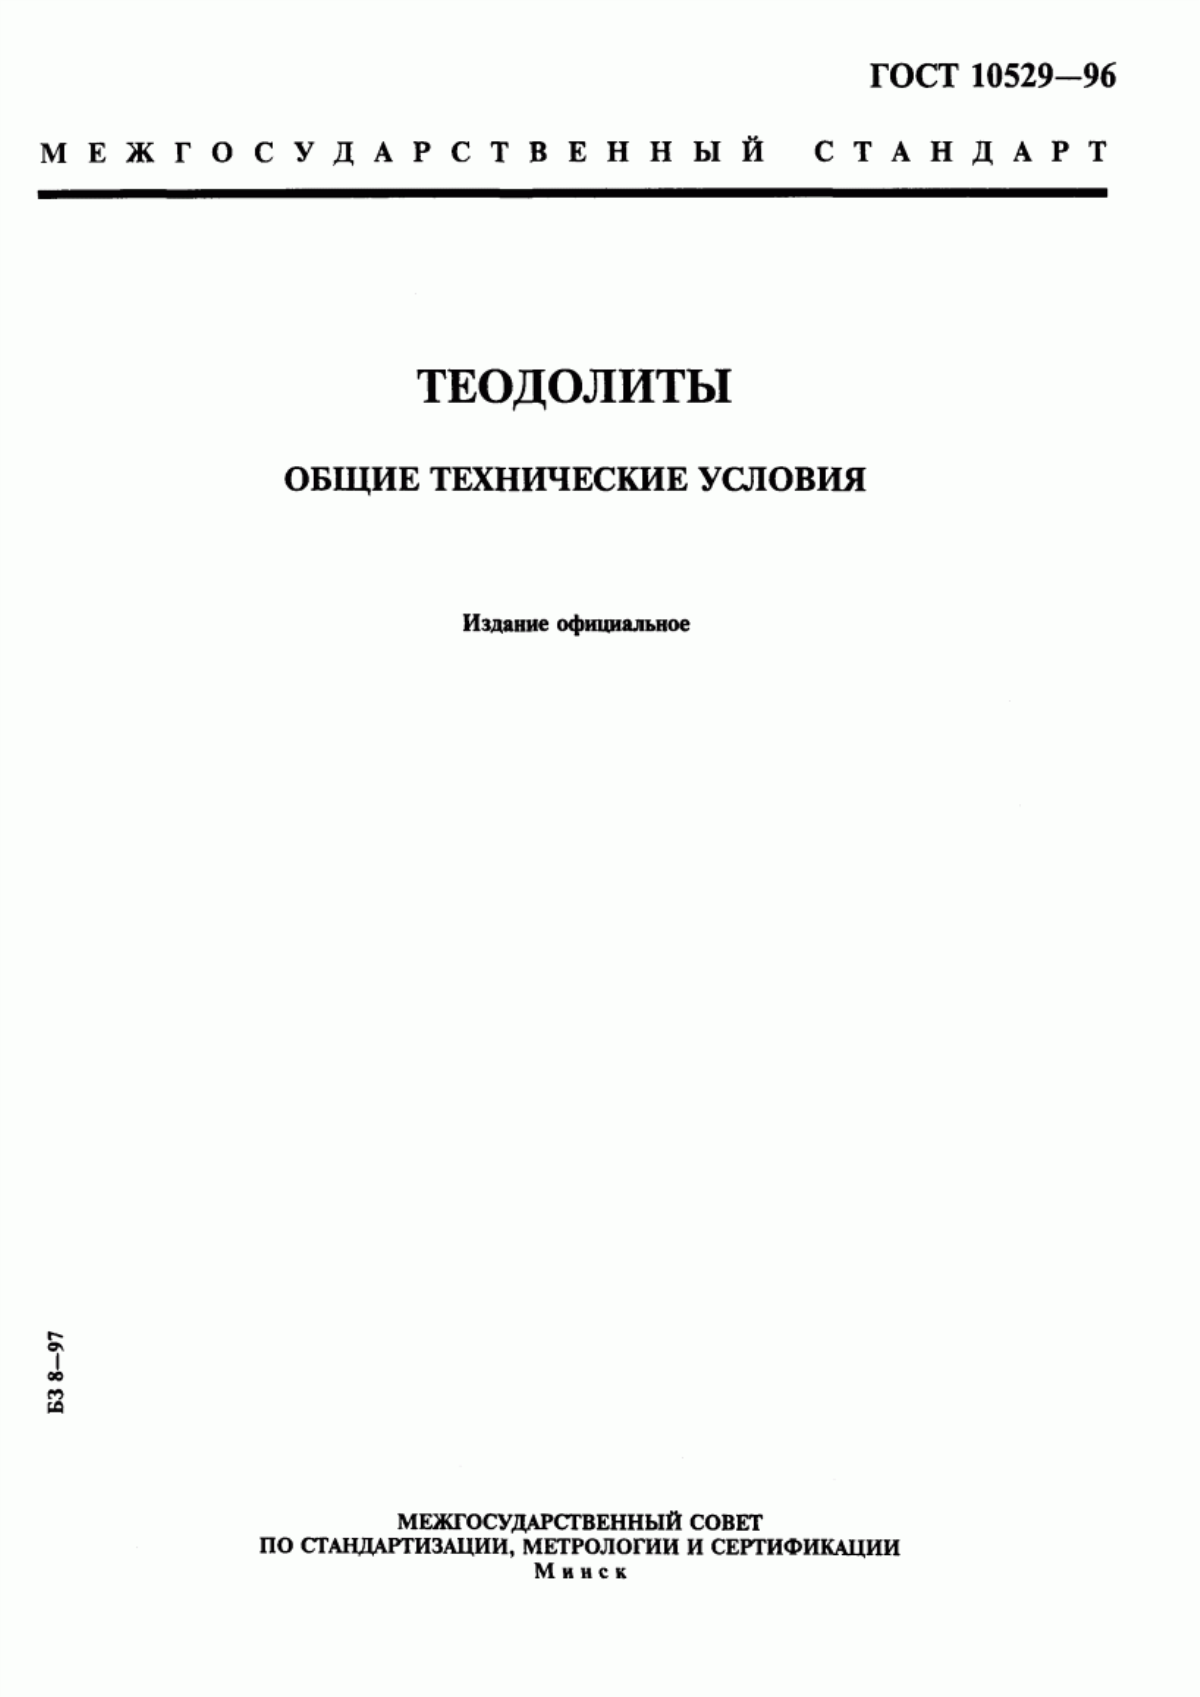 ГОСТ 10529-96 Теодолиты. Общие технические условия